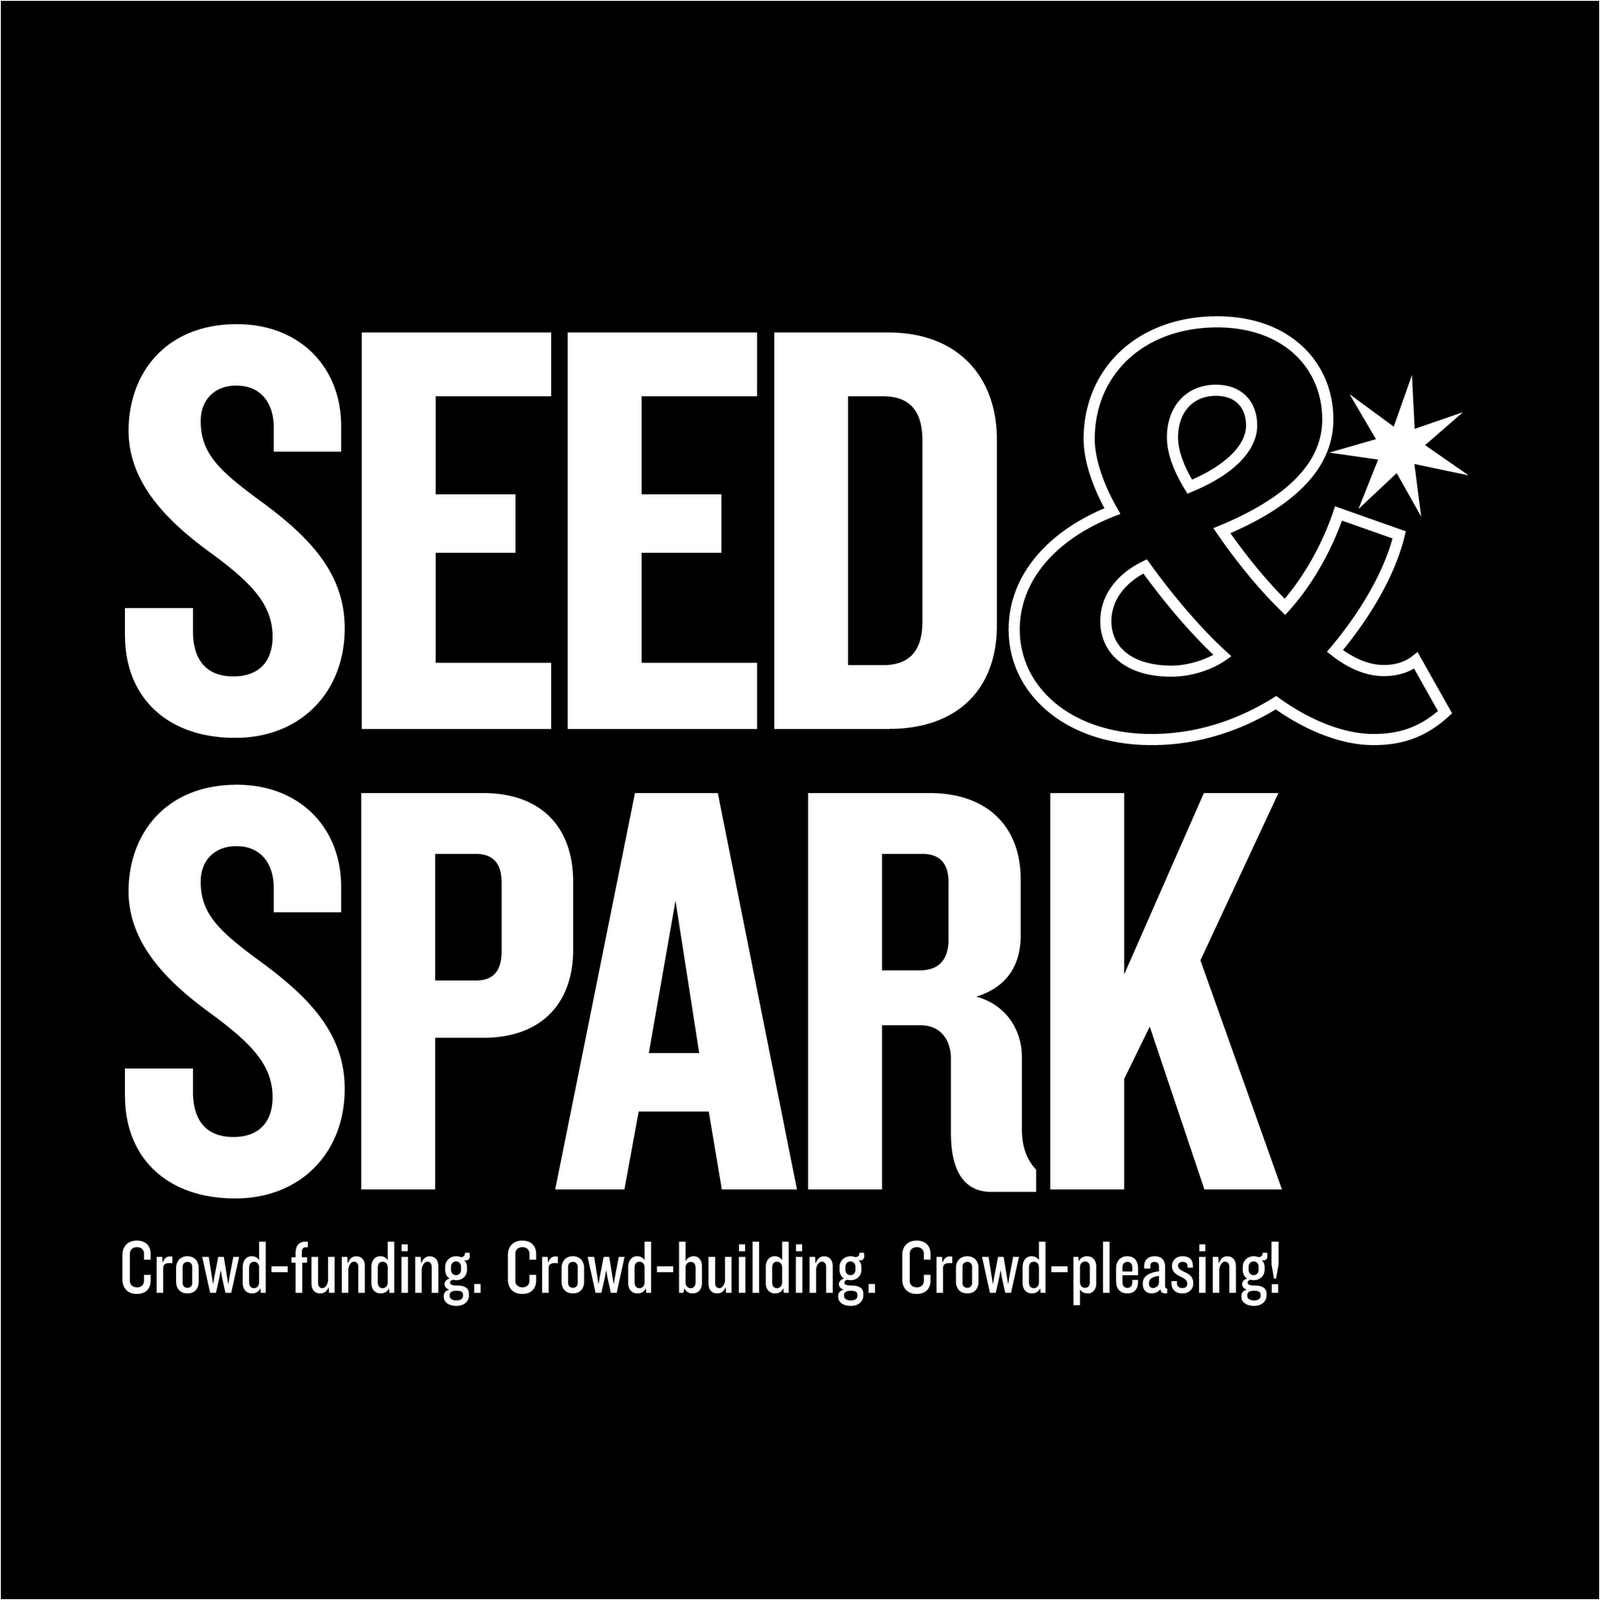 Seed&Spark